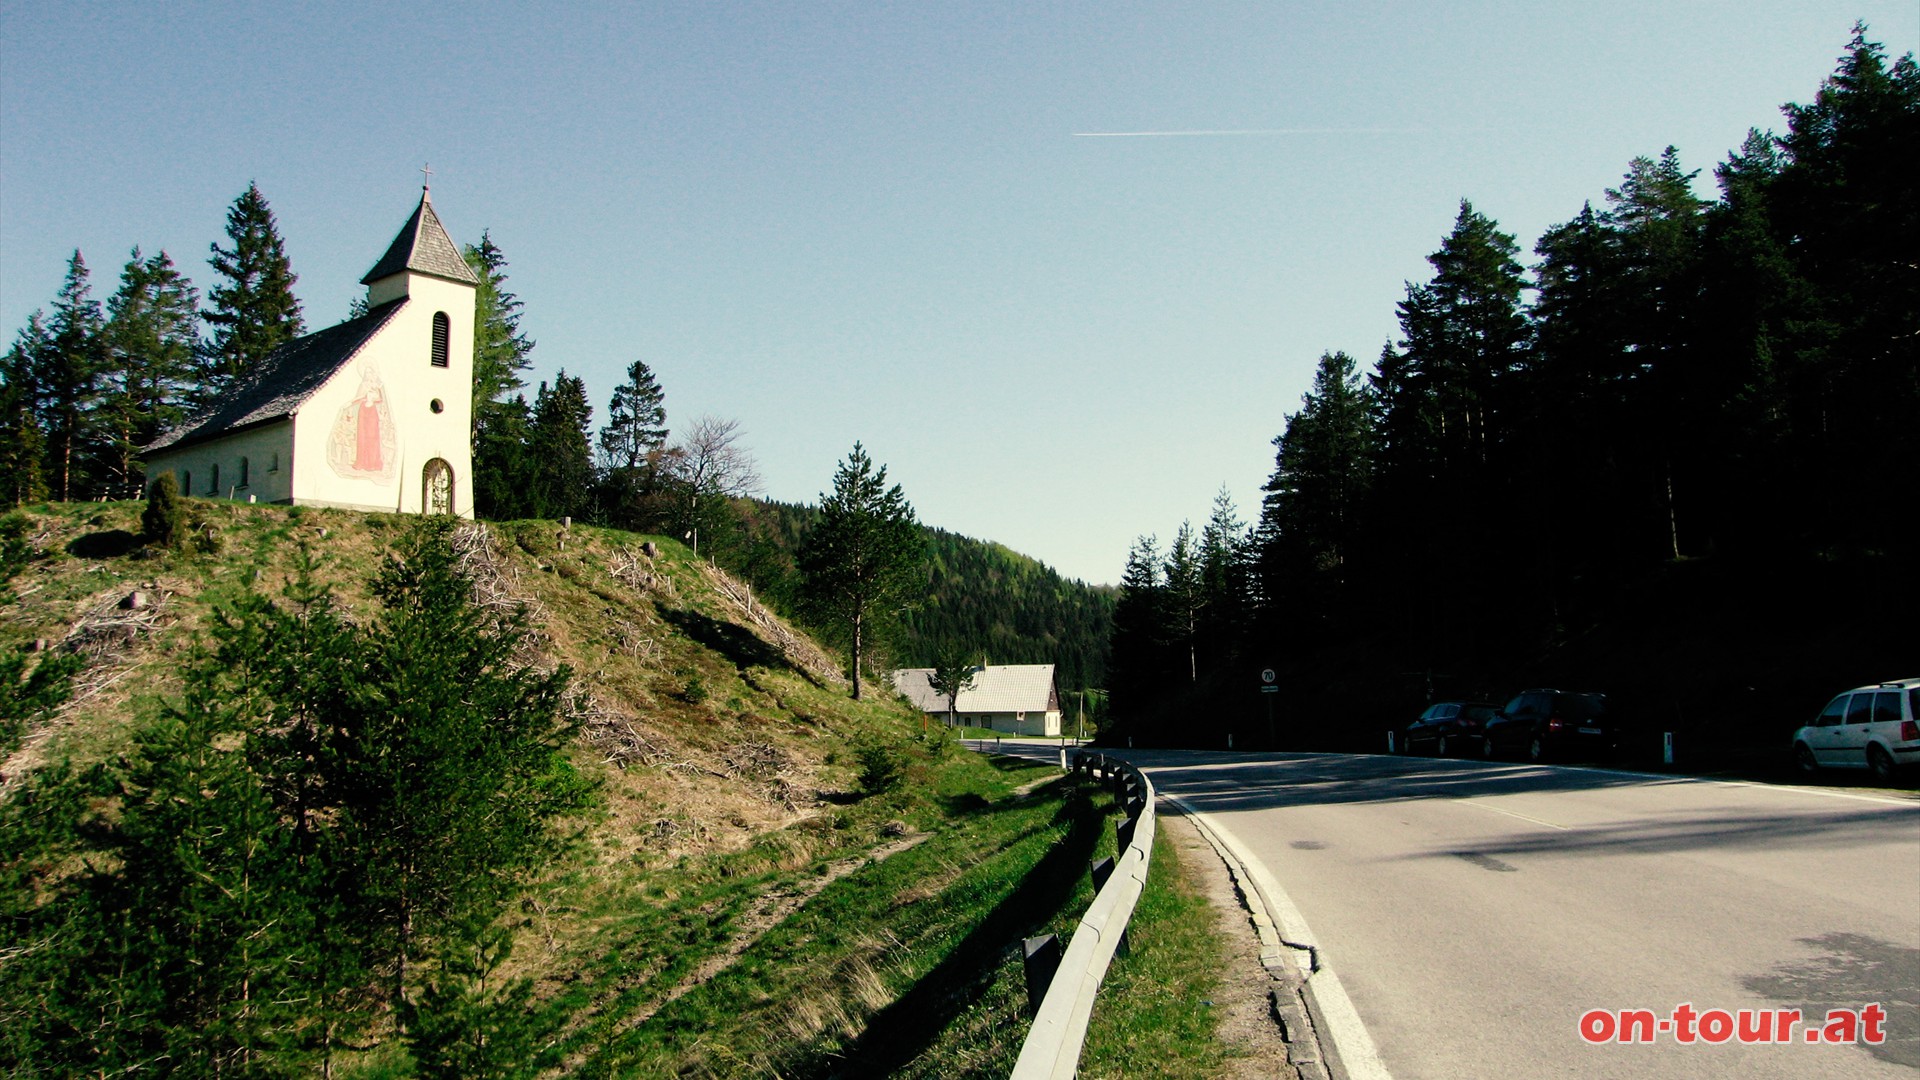 Tourstart beim Kirchlein Maria am Gscheid zwischen Mariazell und St. Aegyd (B 21).